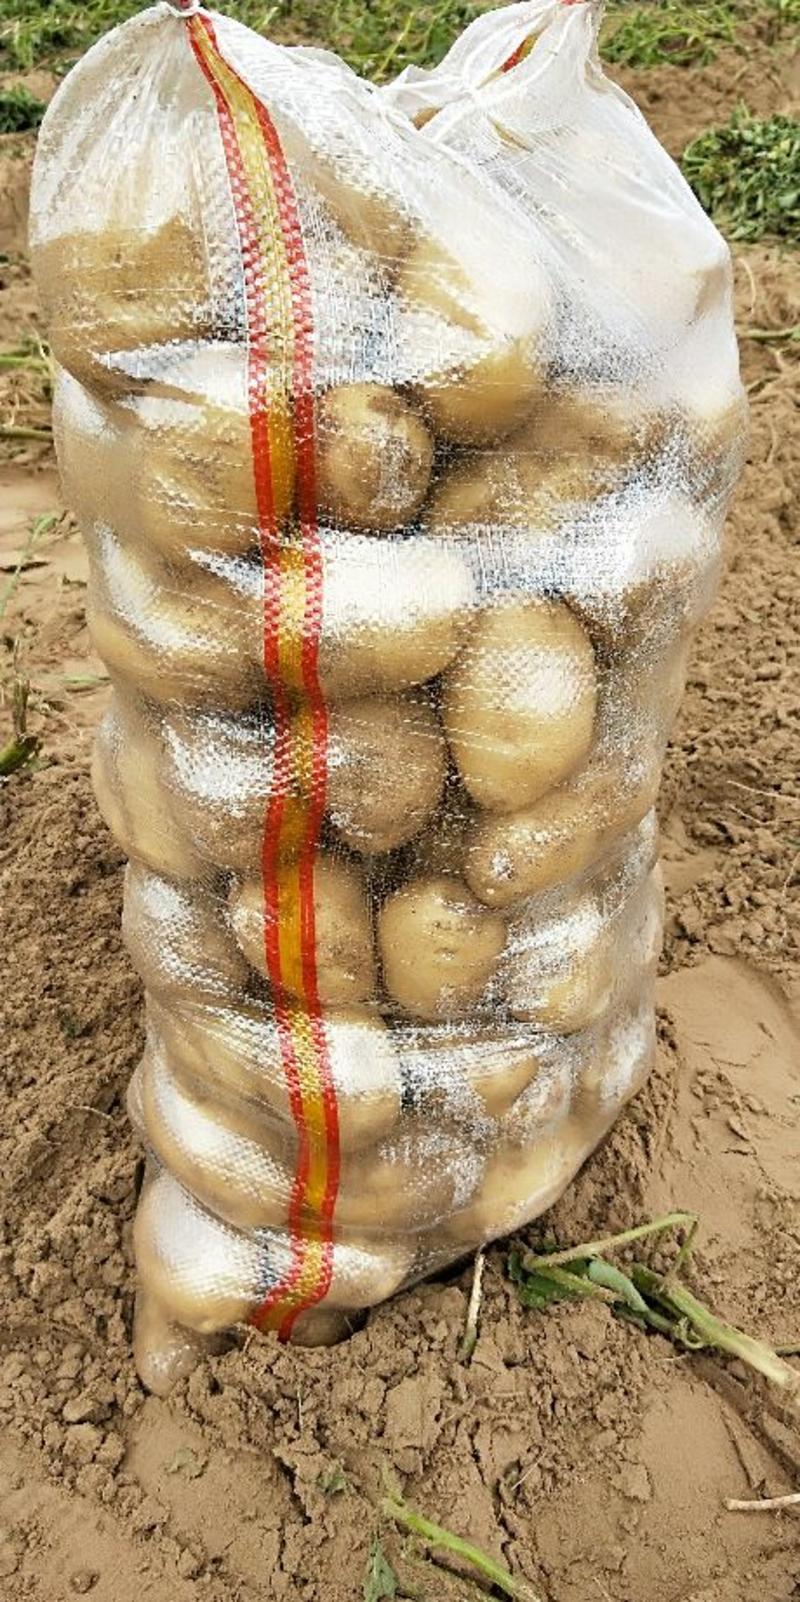 纯沙地土豆226陕北黄沙地基地货支持线上交易